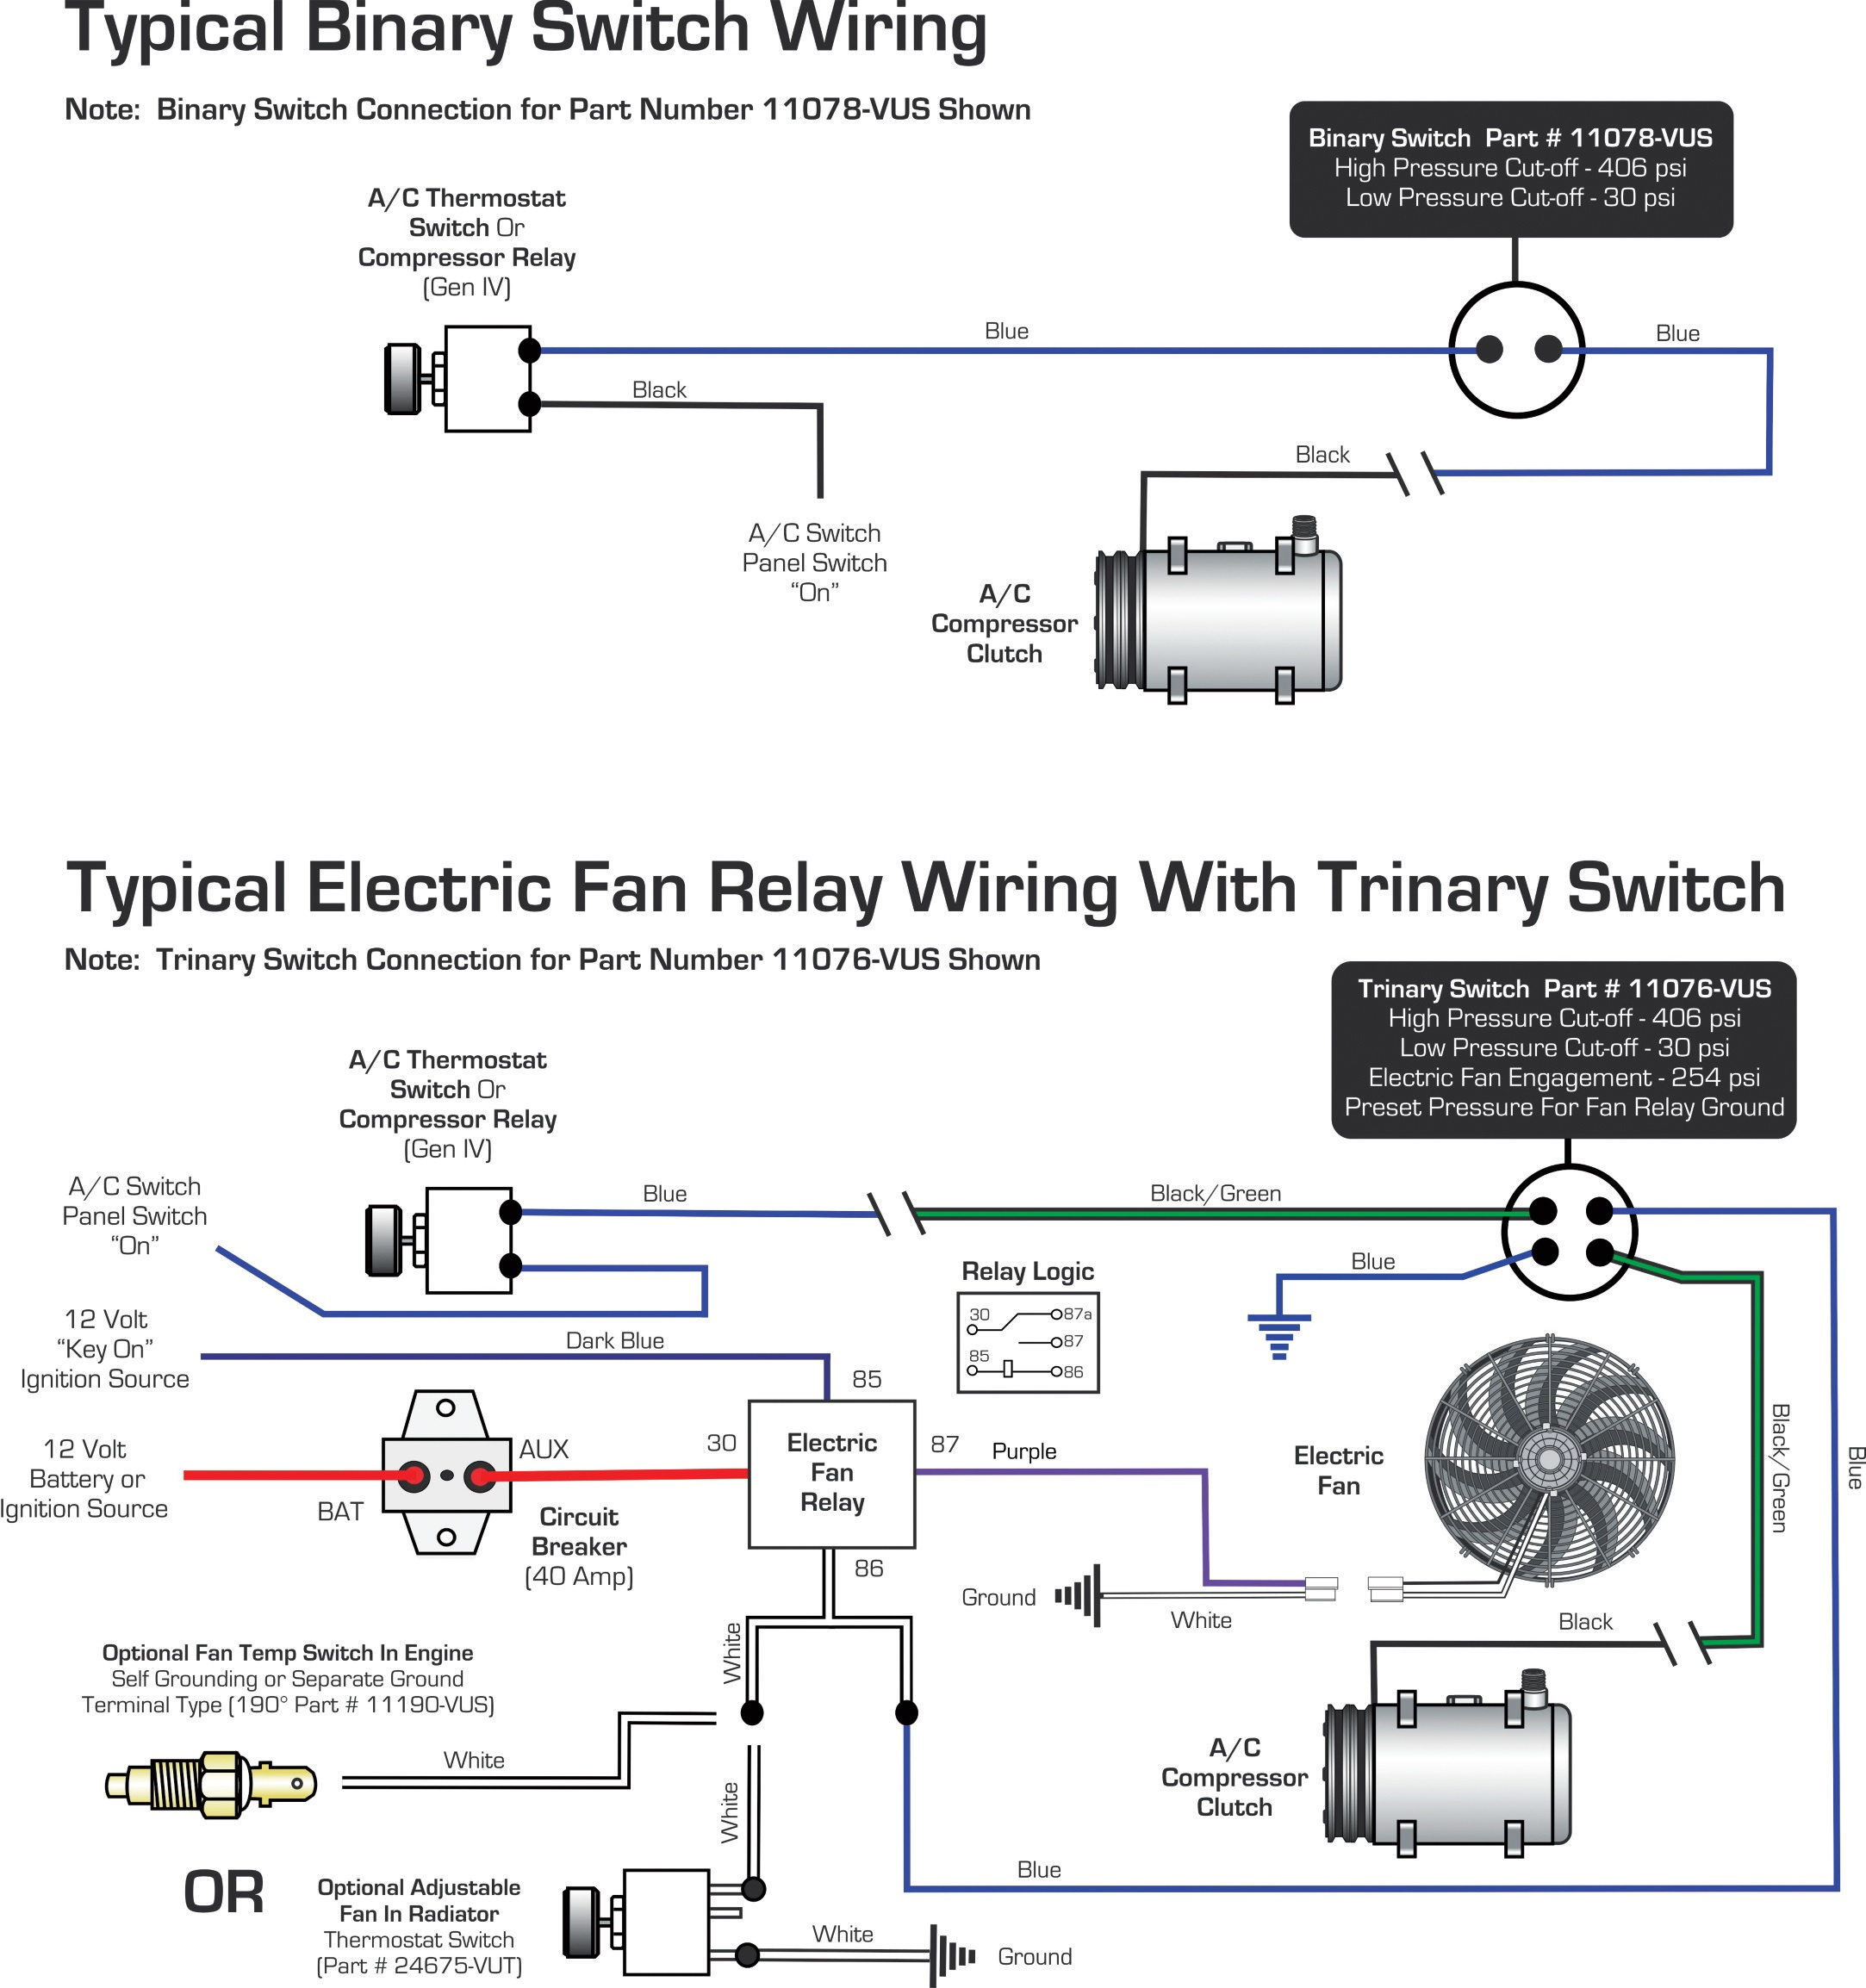 Vintage Air » Blog Archive Wiring Diagrams Binary Switch / Trinary - Vintage Air Wiring Diagram